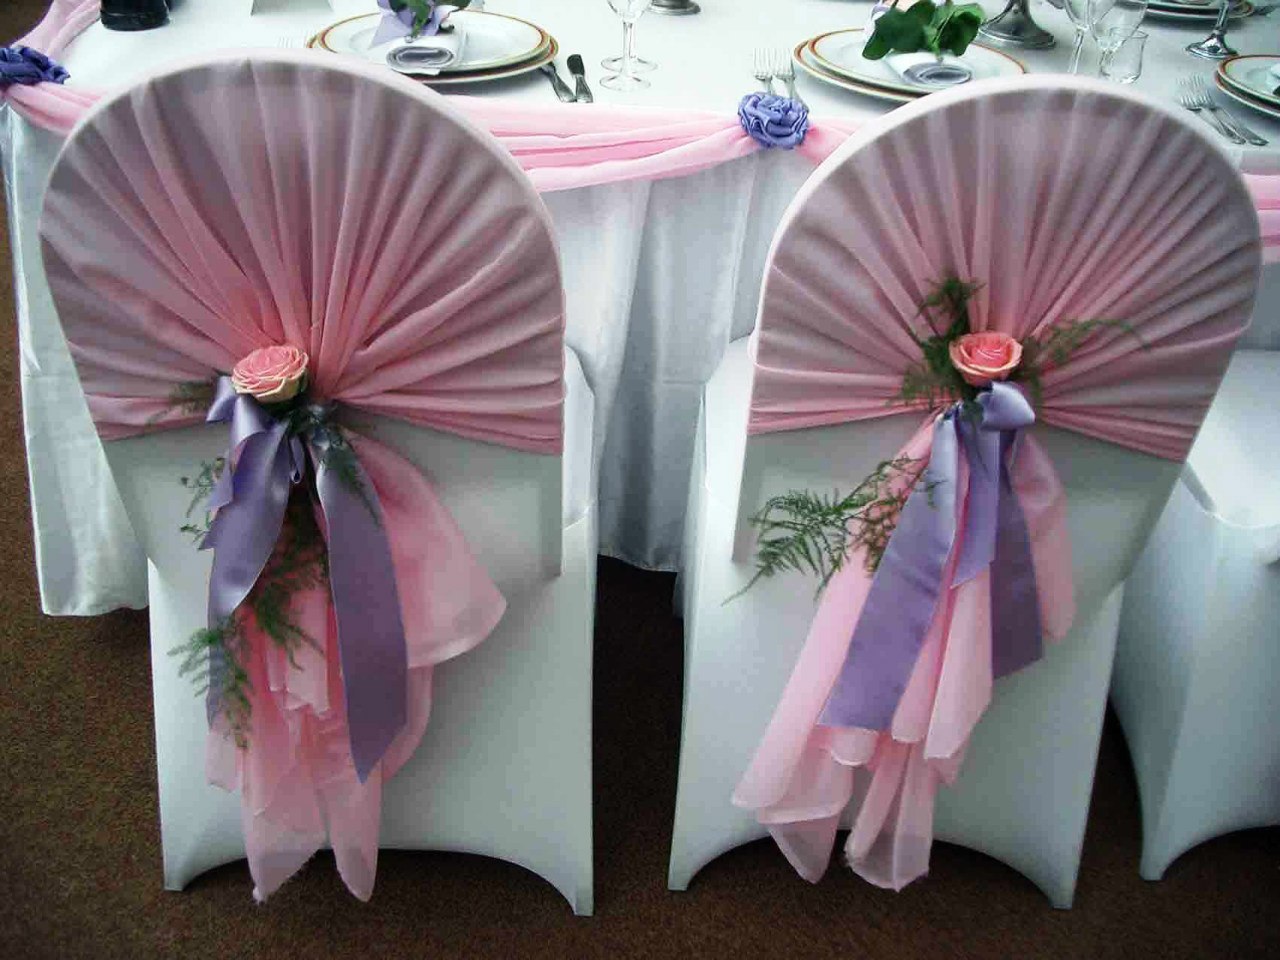 Банты для украшения на свадебный стол